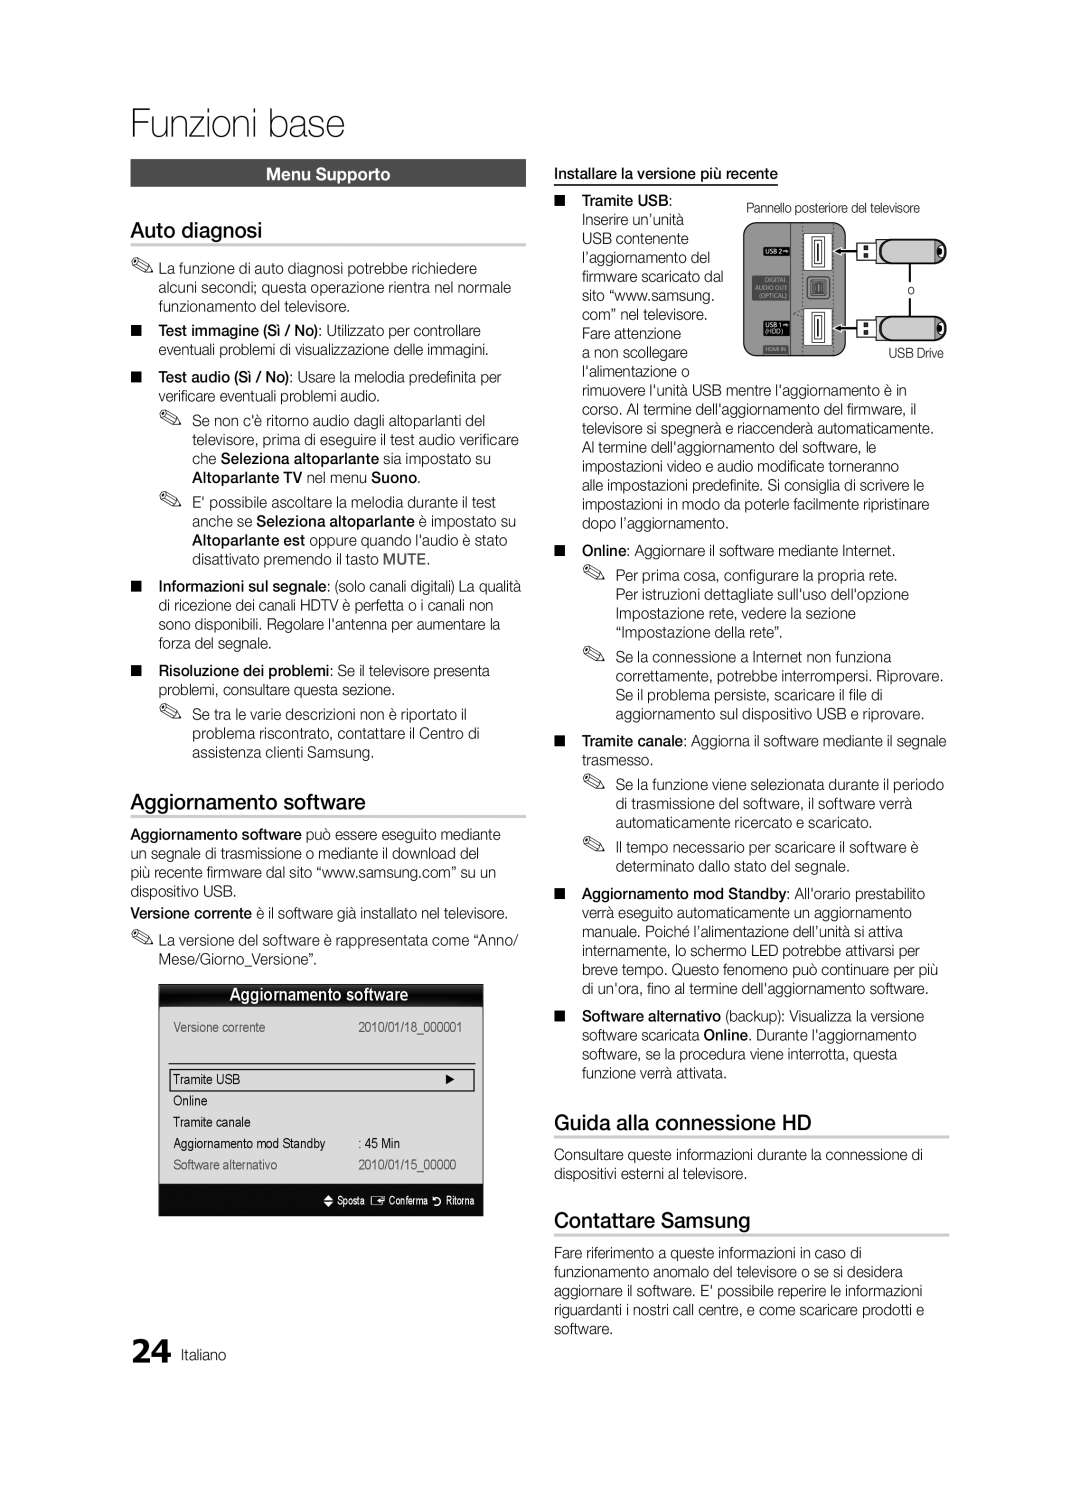 Samsung UE40C6510UPXZT manual Auto diagnosi, Aggiornamento software, Guida alla connessione HD, Contattare Samsung 